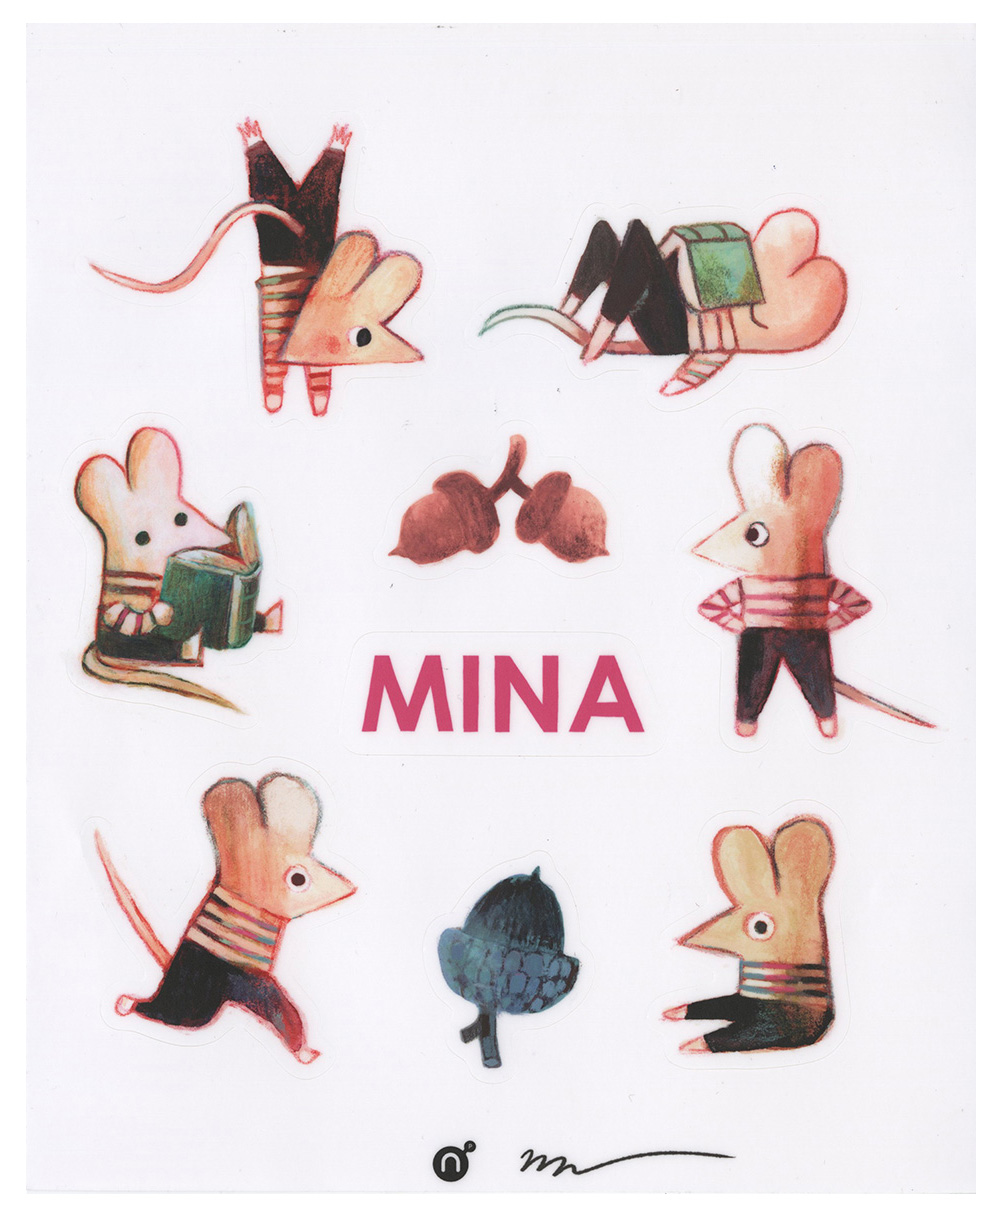 MINA Sticker Sheet, Matt Forsythe